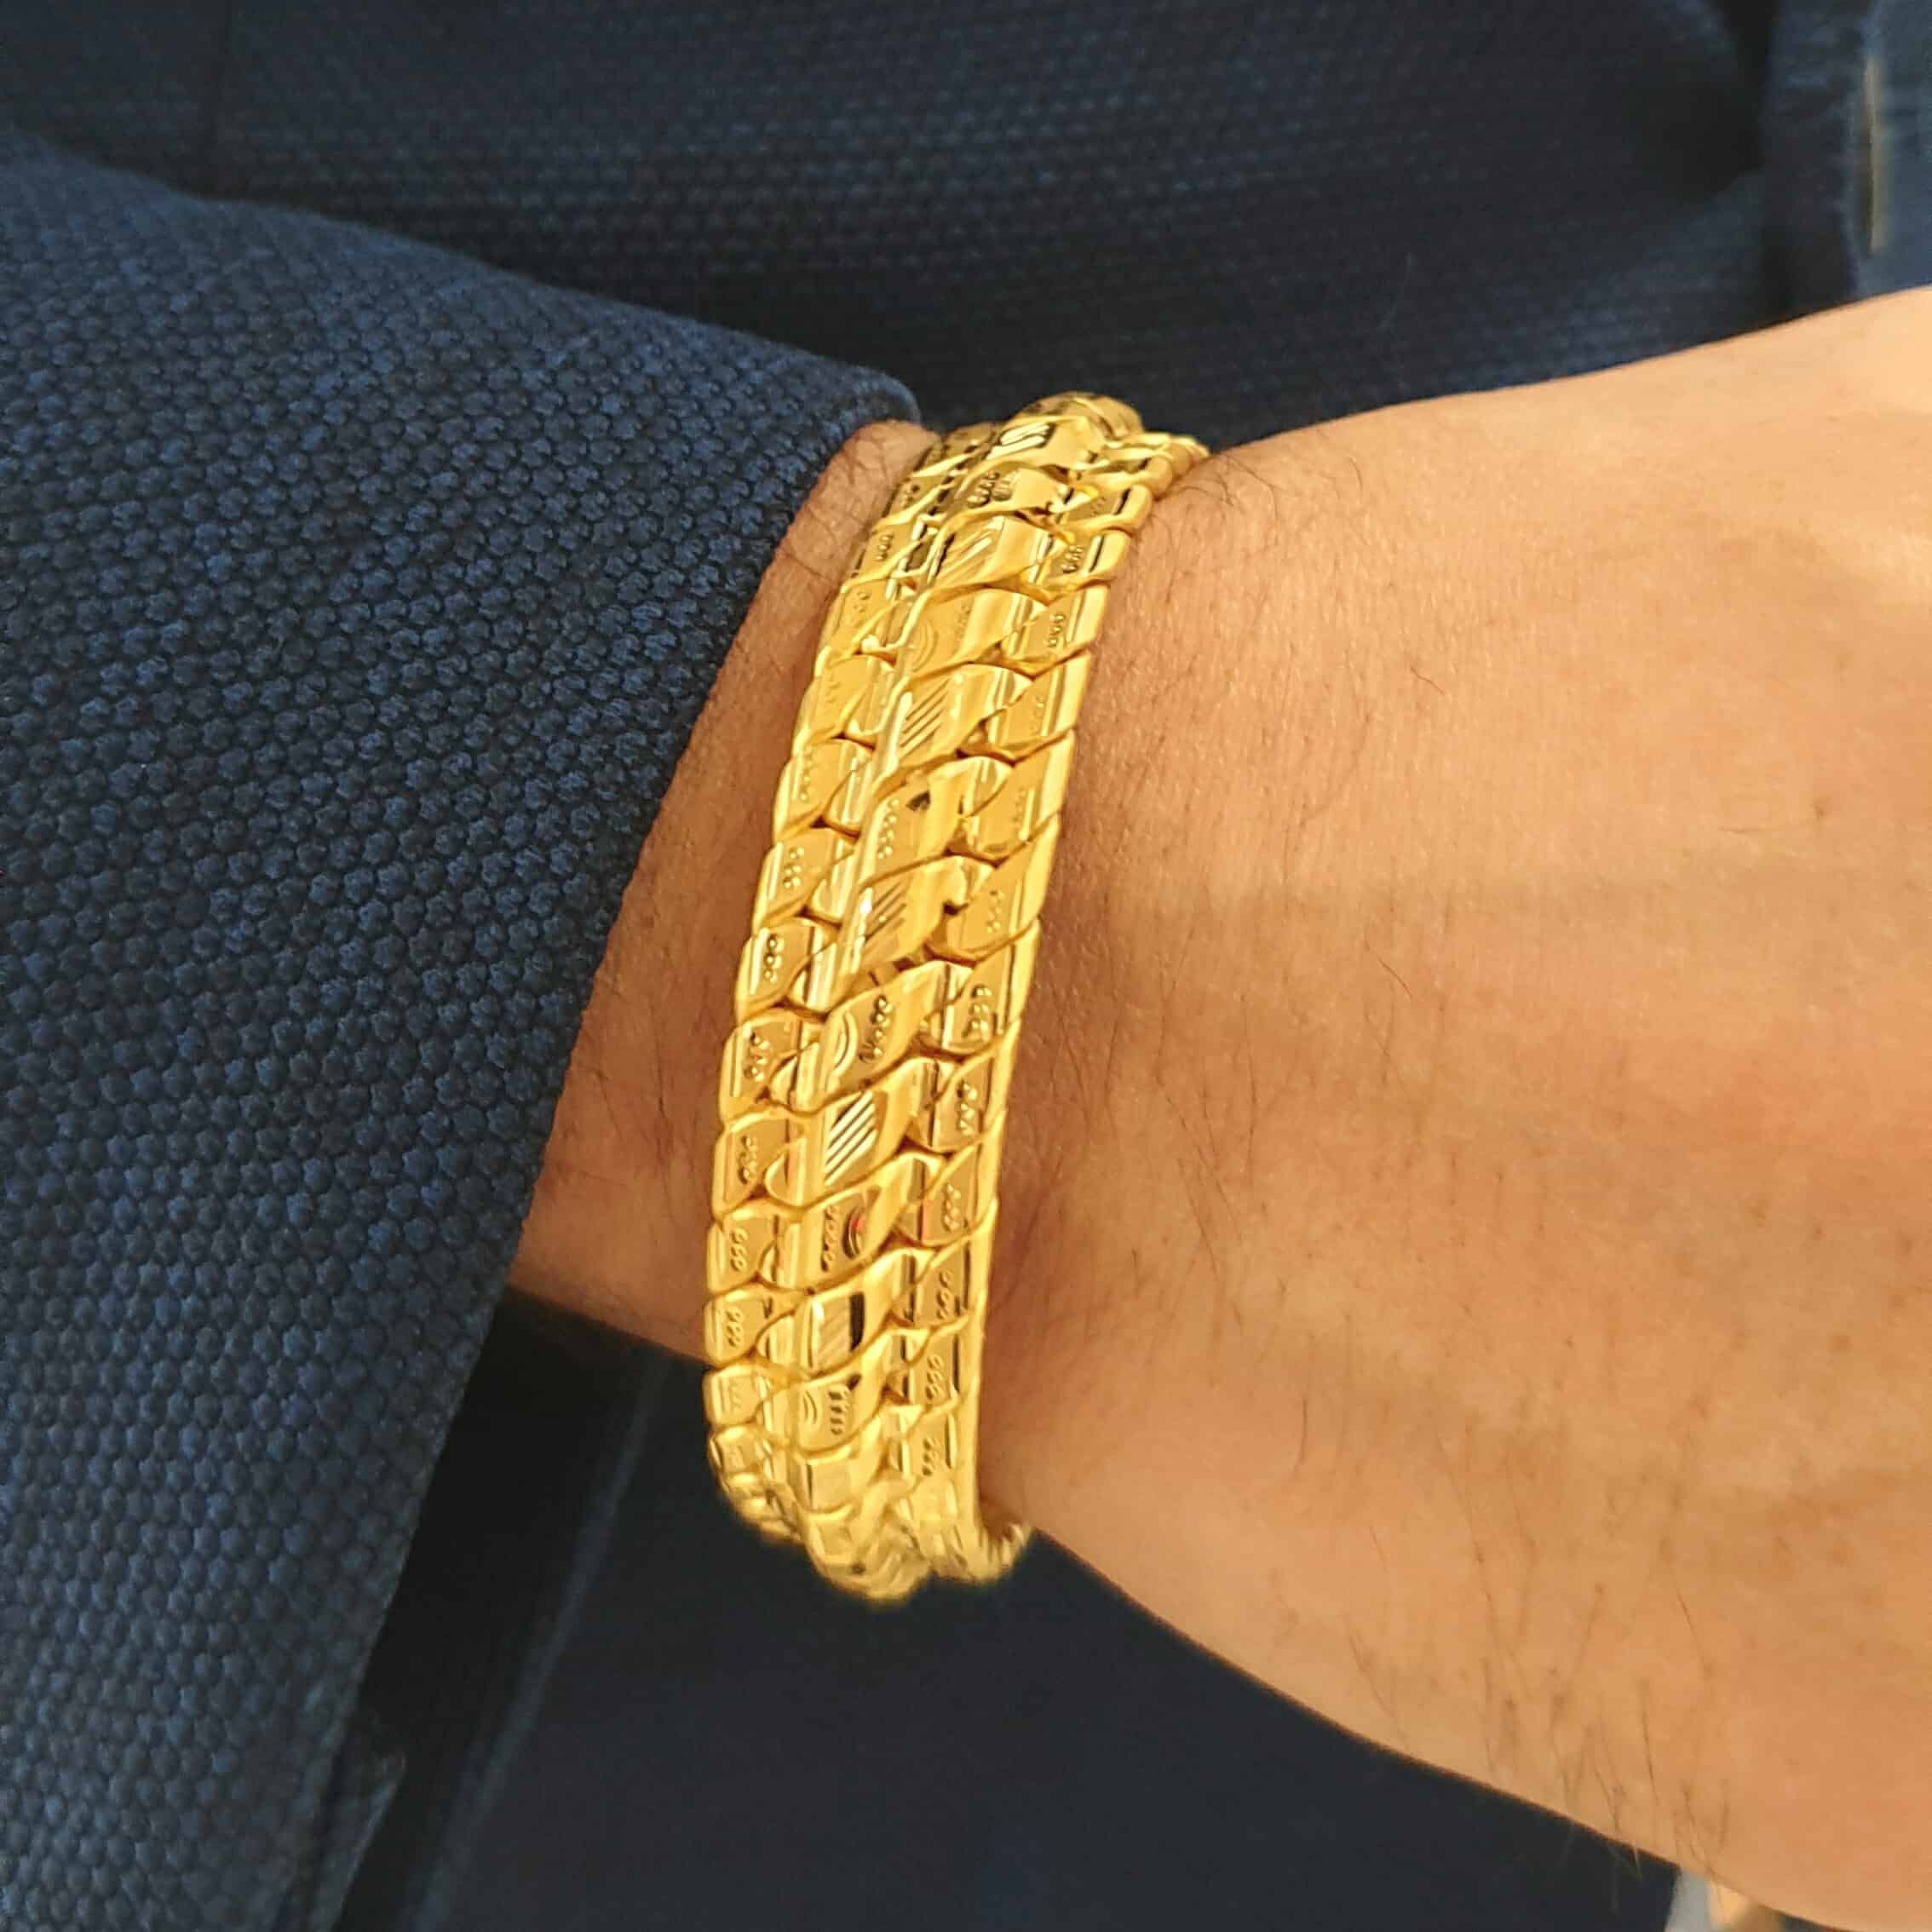 Buy Bhima Jewellers 22k Gold Bracelet for Men 16.17 g at Amazon.in